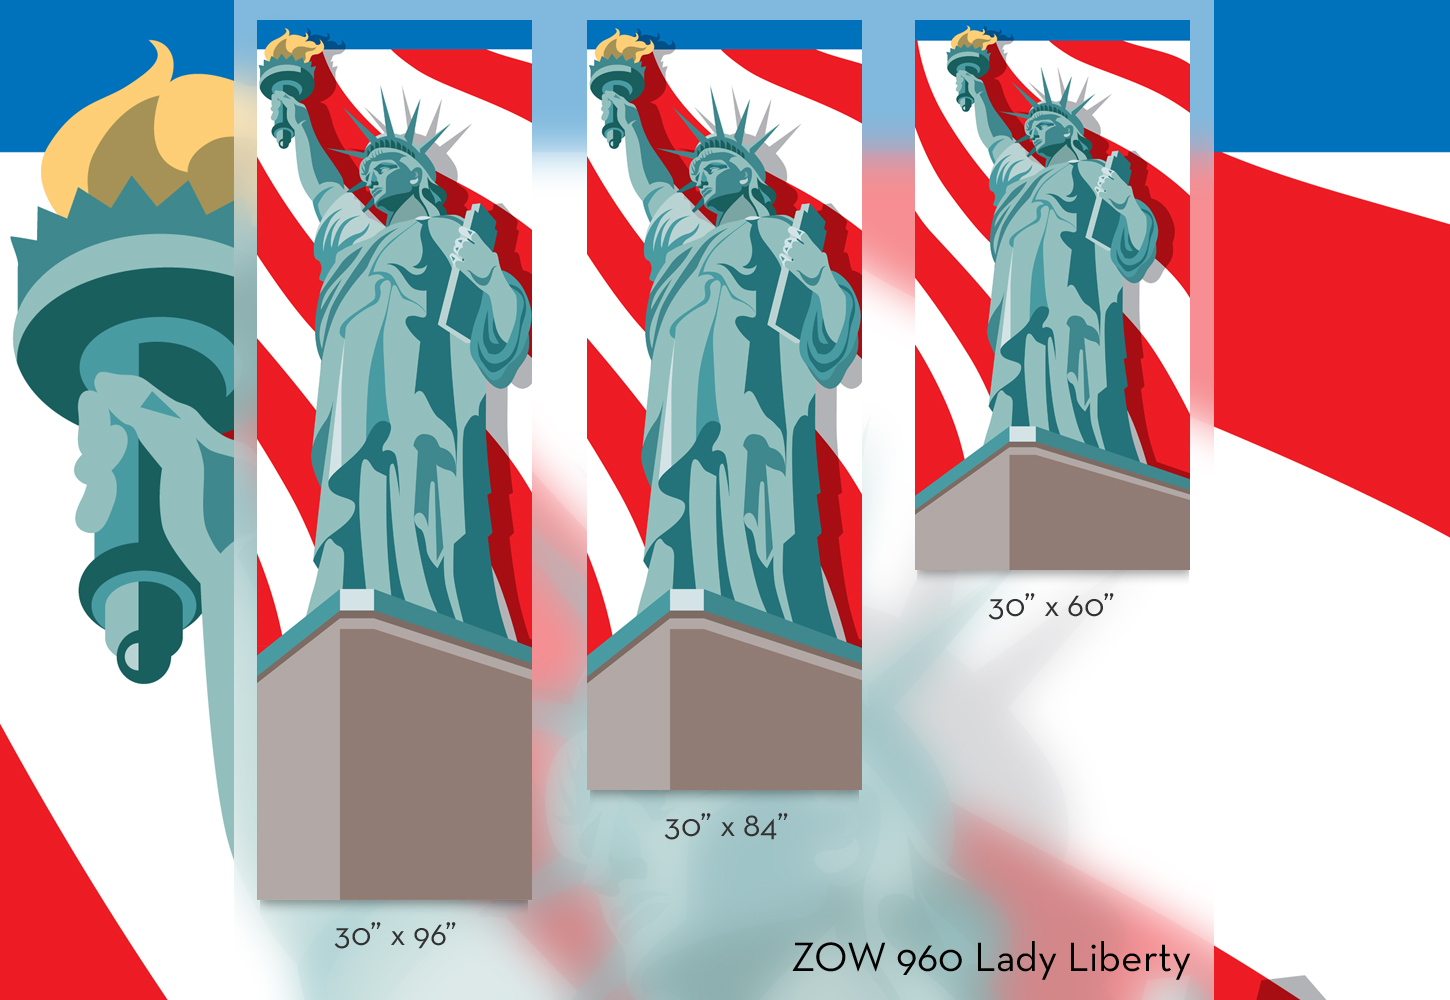 ZOW 960 Lady Liberty